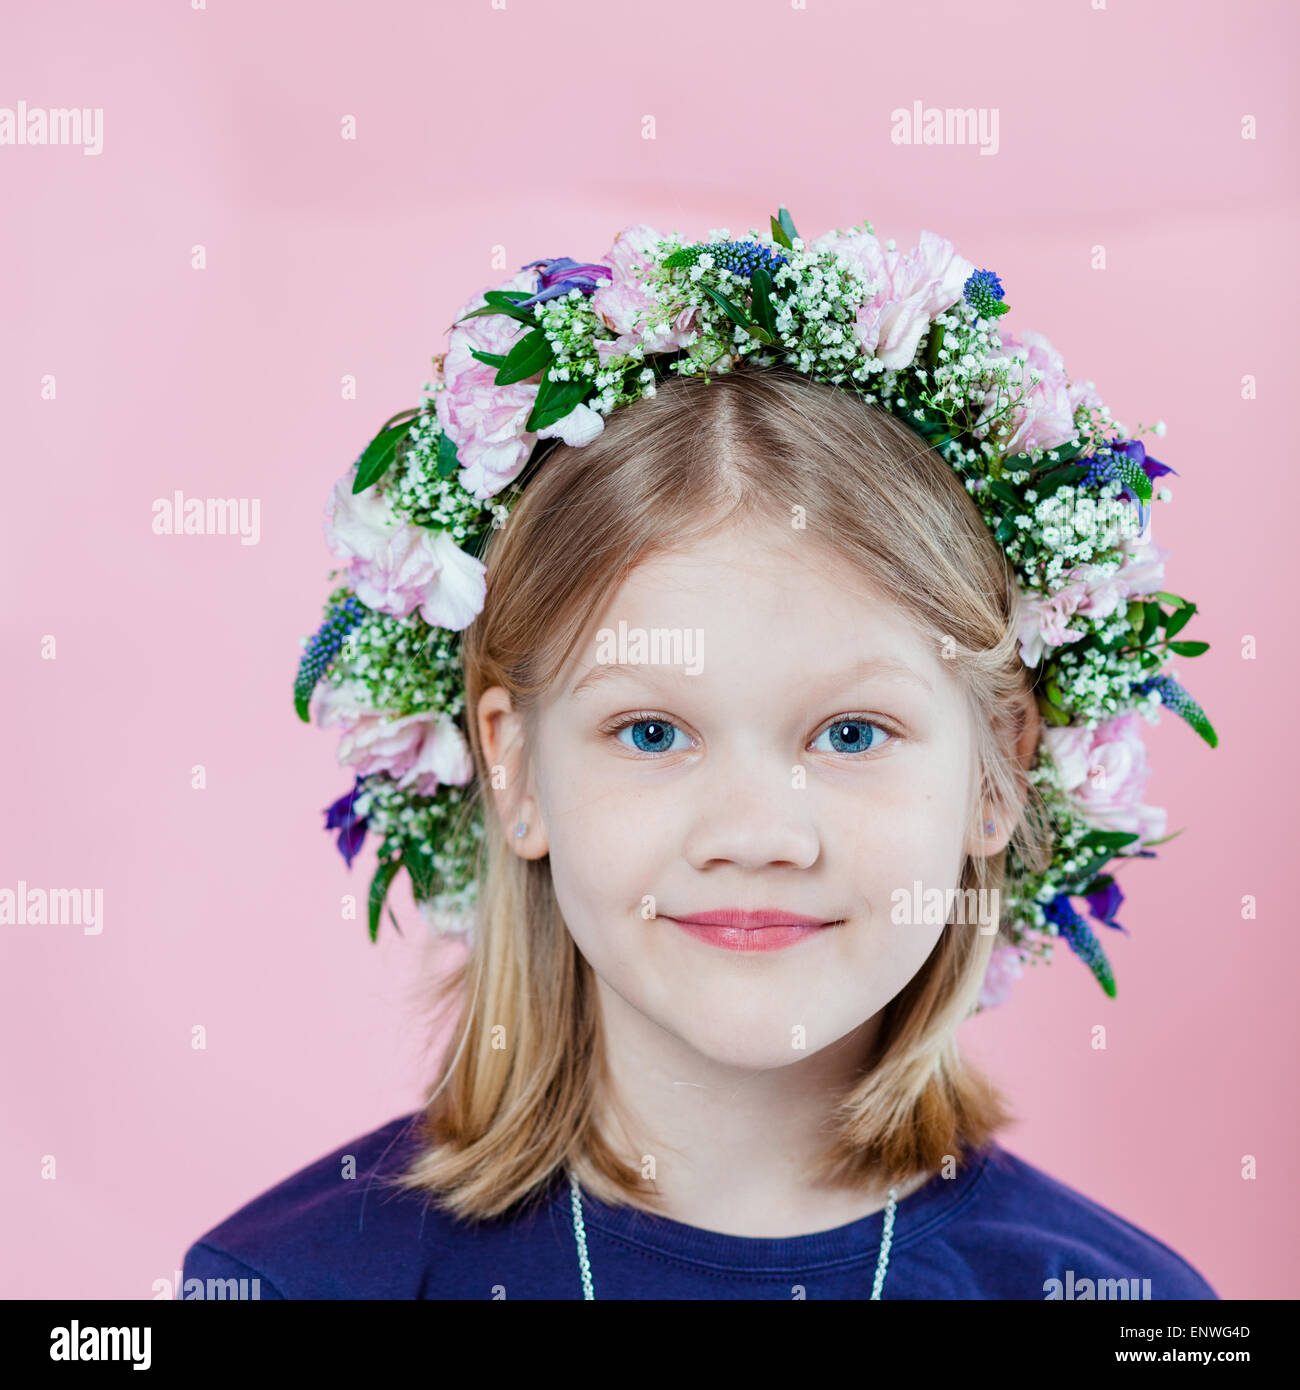 Porträt eines süßen kleinen Mädchens mit einer Blumengirlande auf ihr Haar Stockfoto